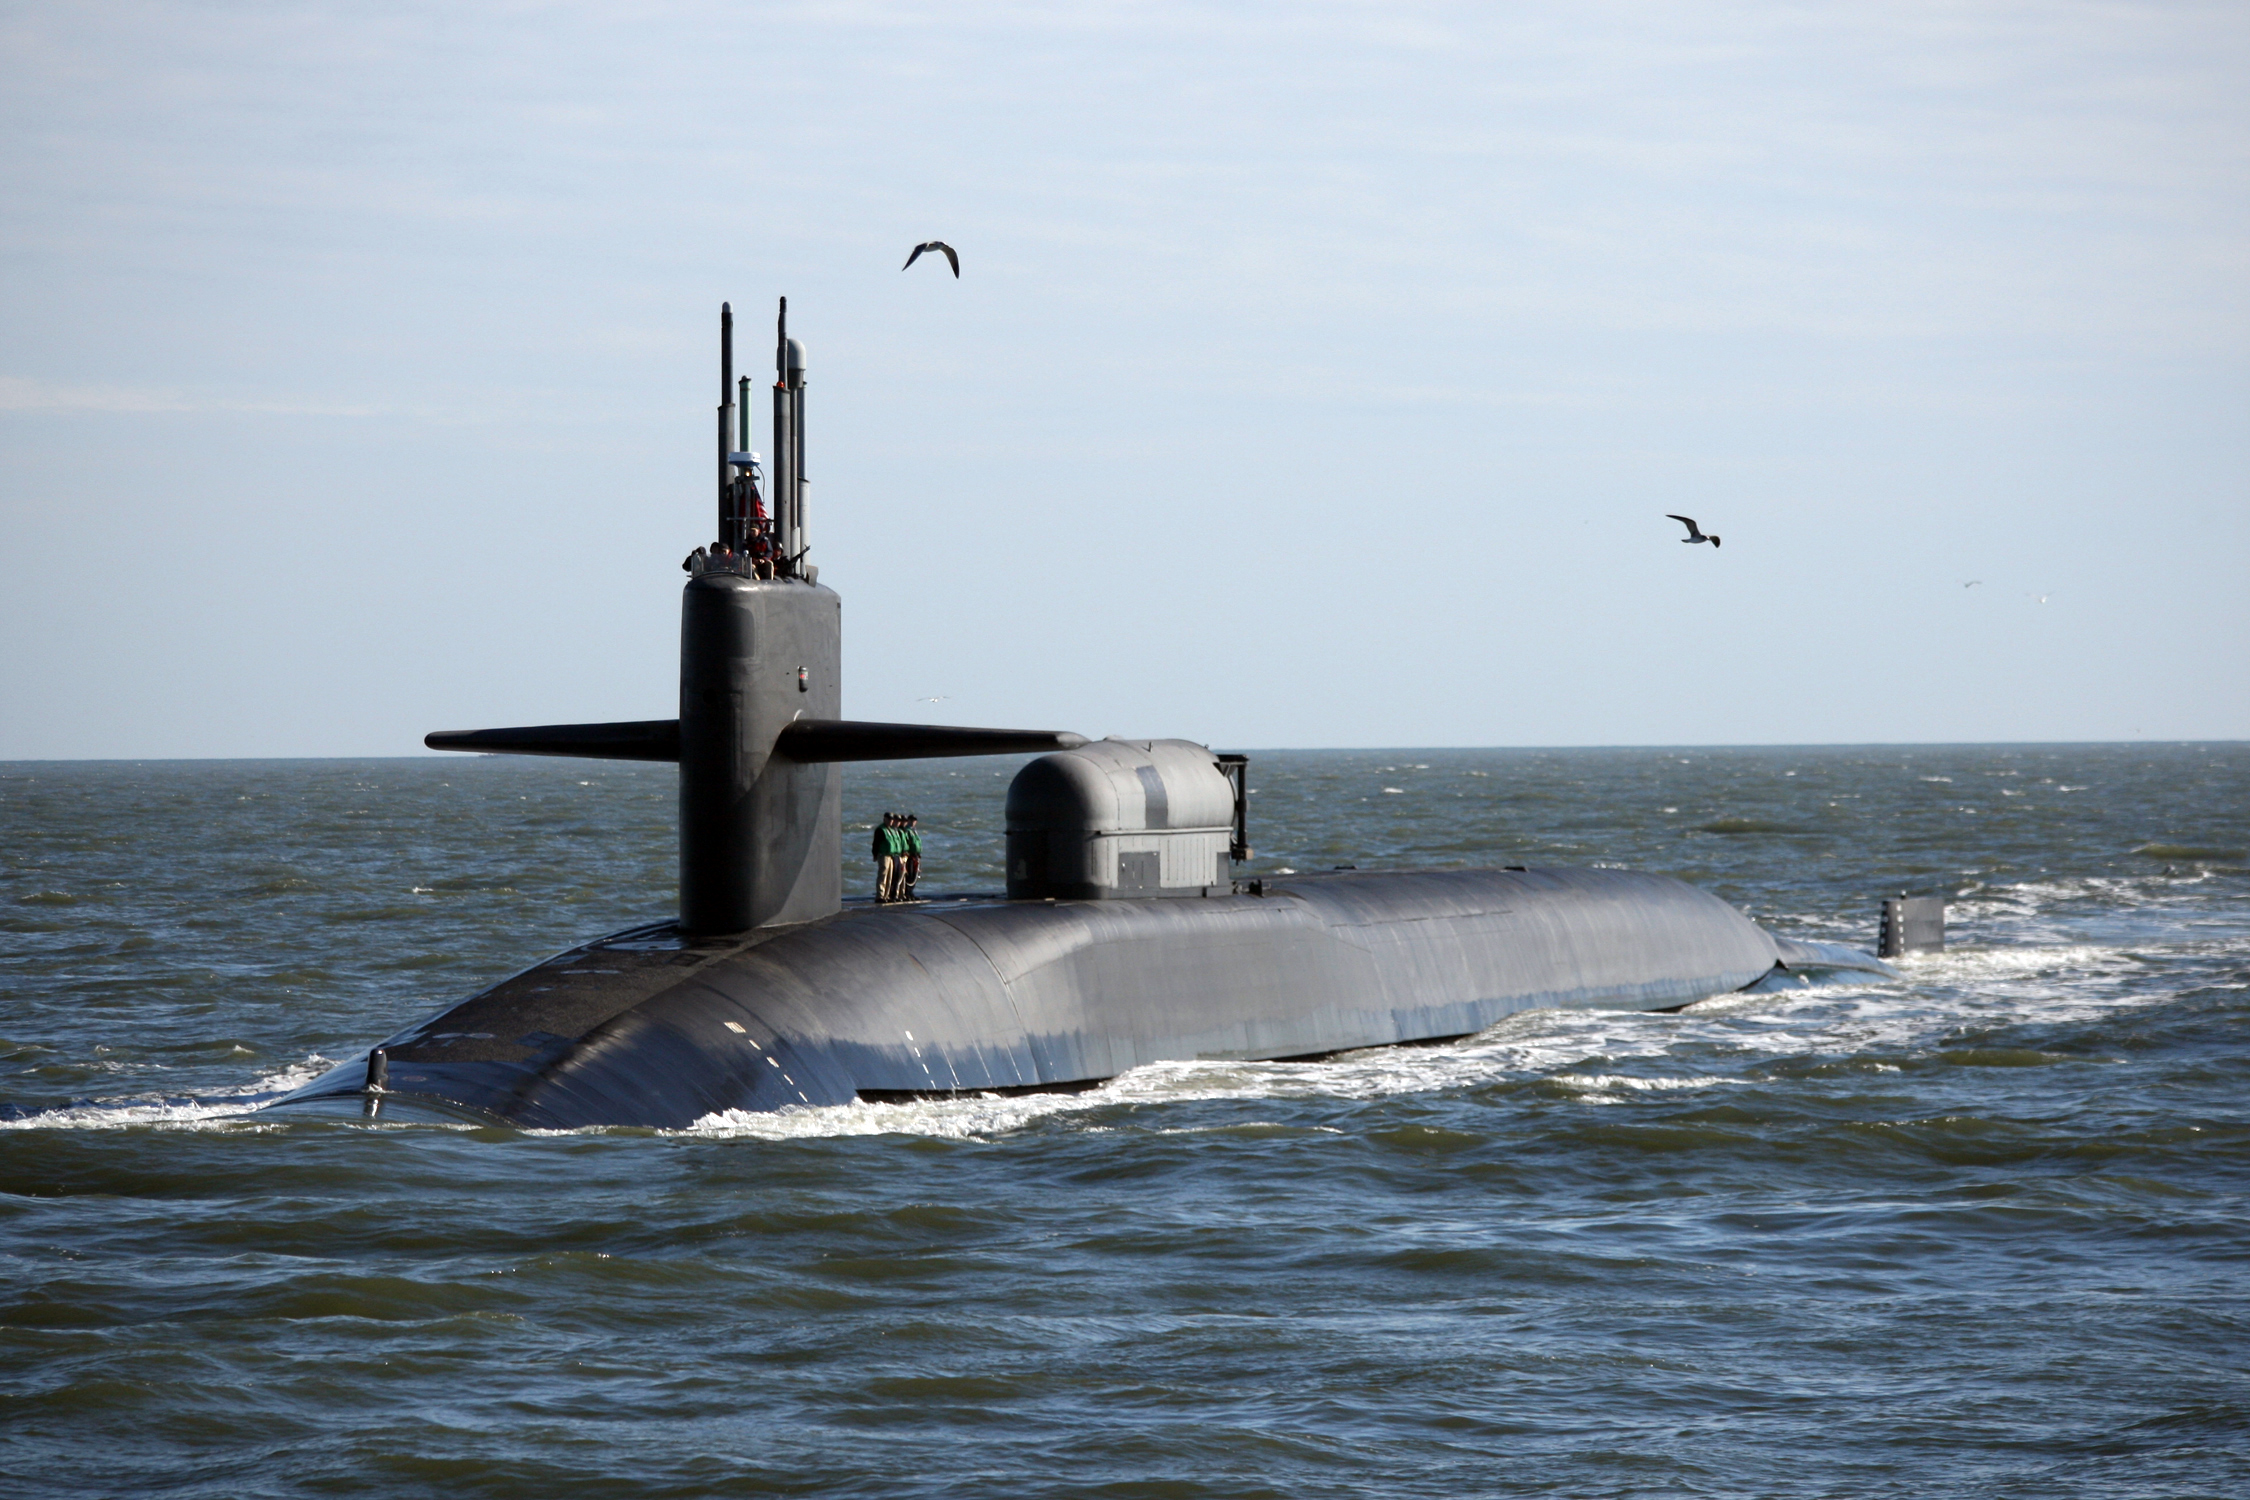 USA podwajają liczbę okrętów podwodnych w Wielkiej Brytanii w 2022 roku - niektóre okręty podwodne mogą przenosić rakiety Trident II z głowicami nuklearnymi